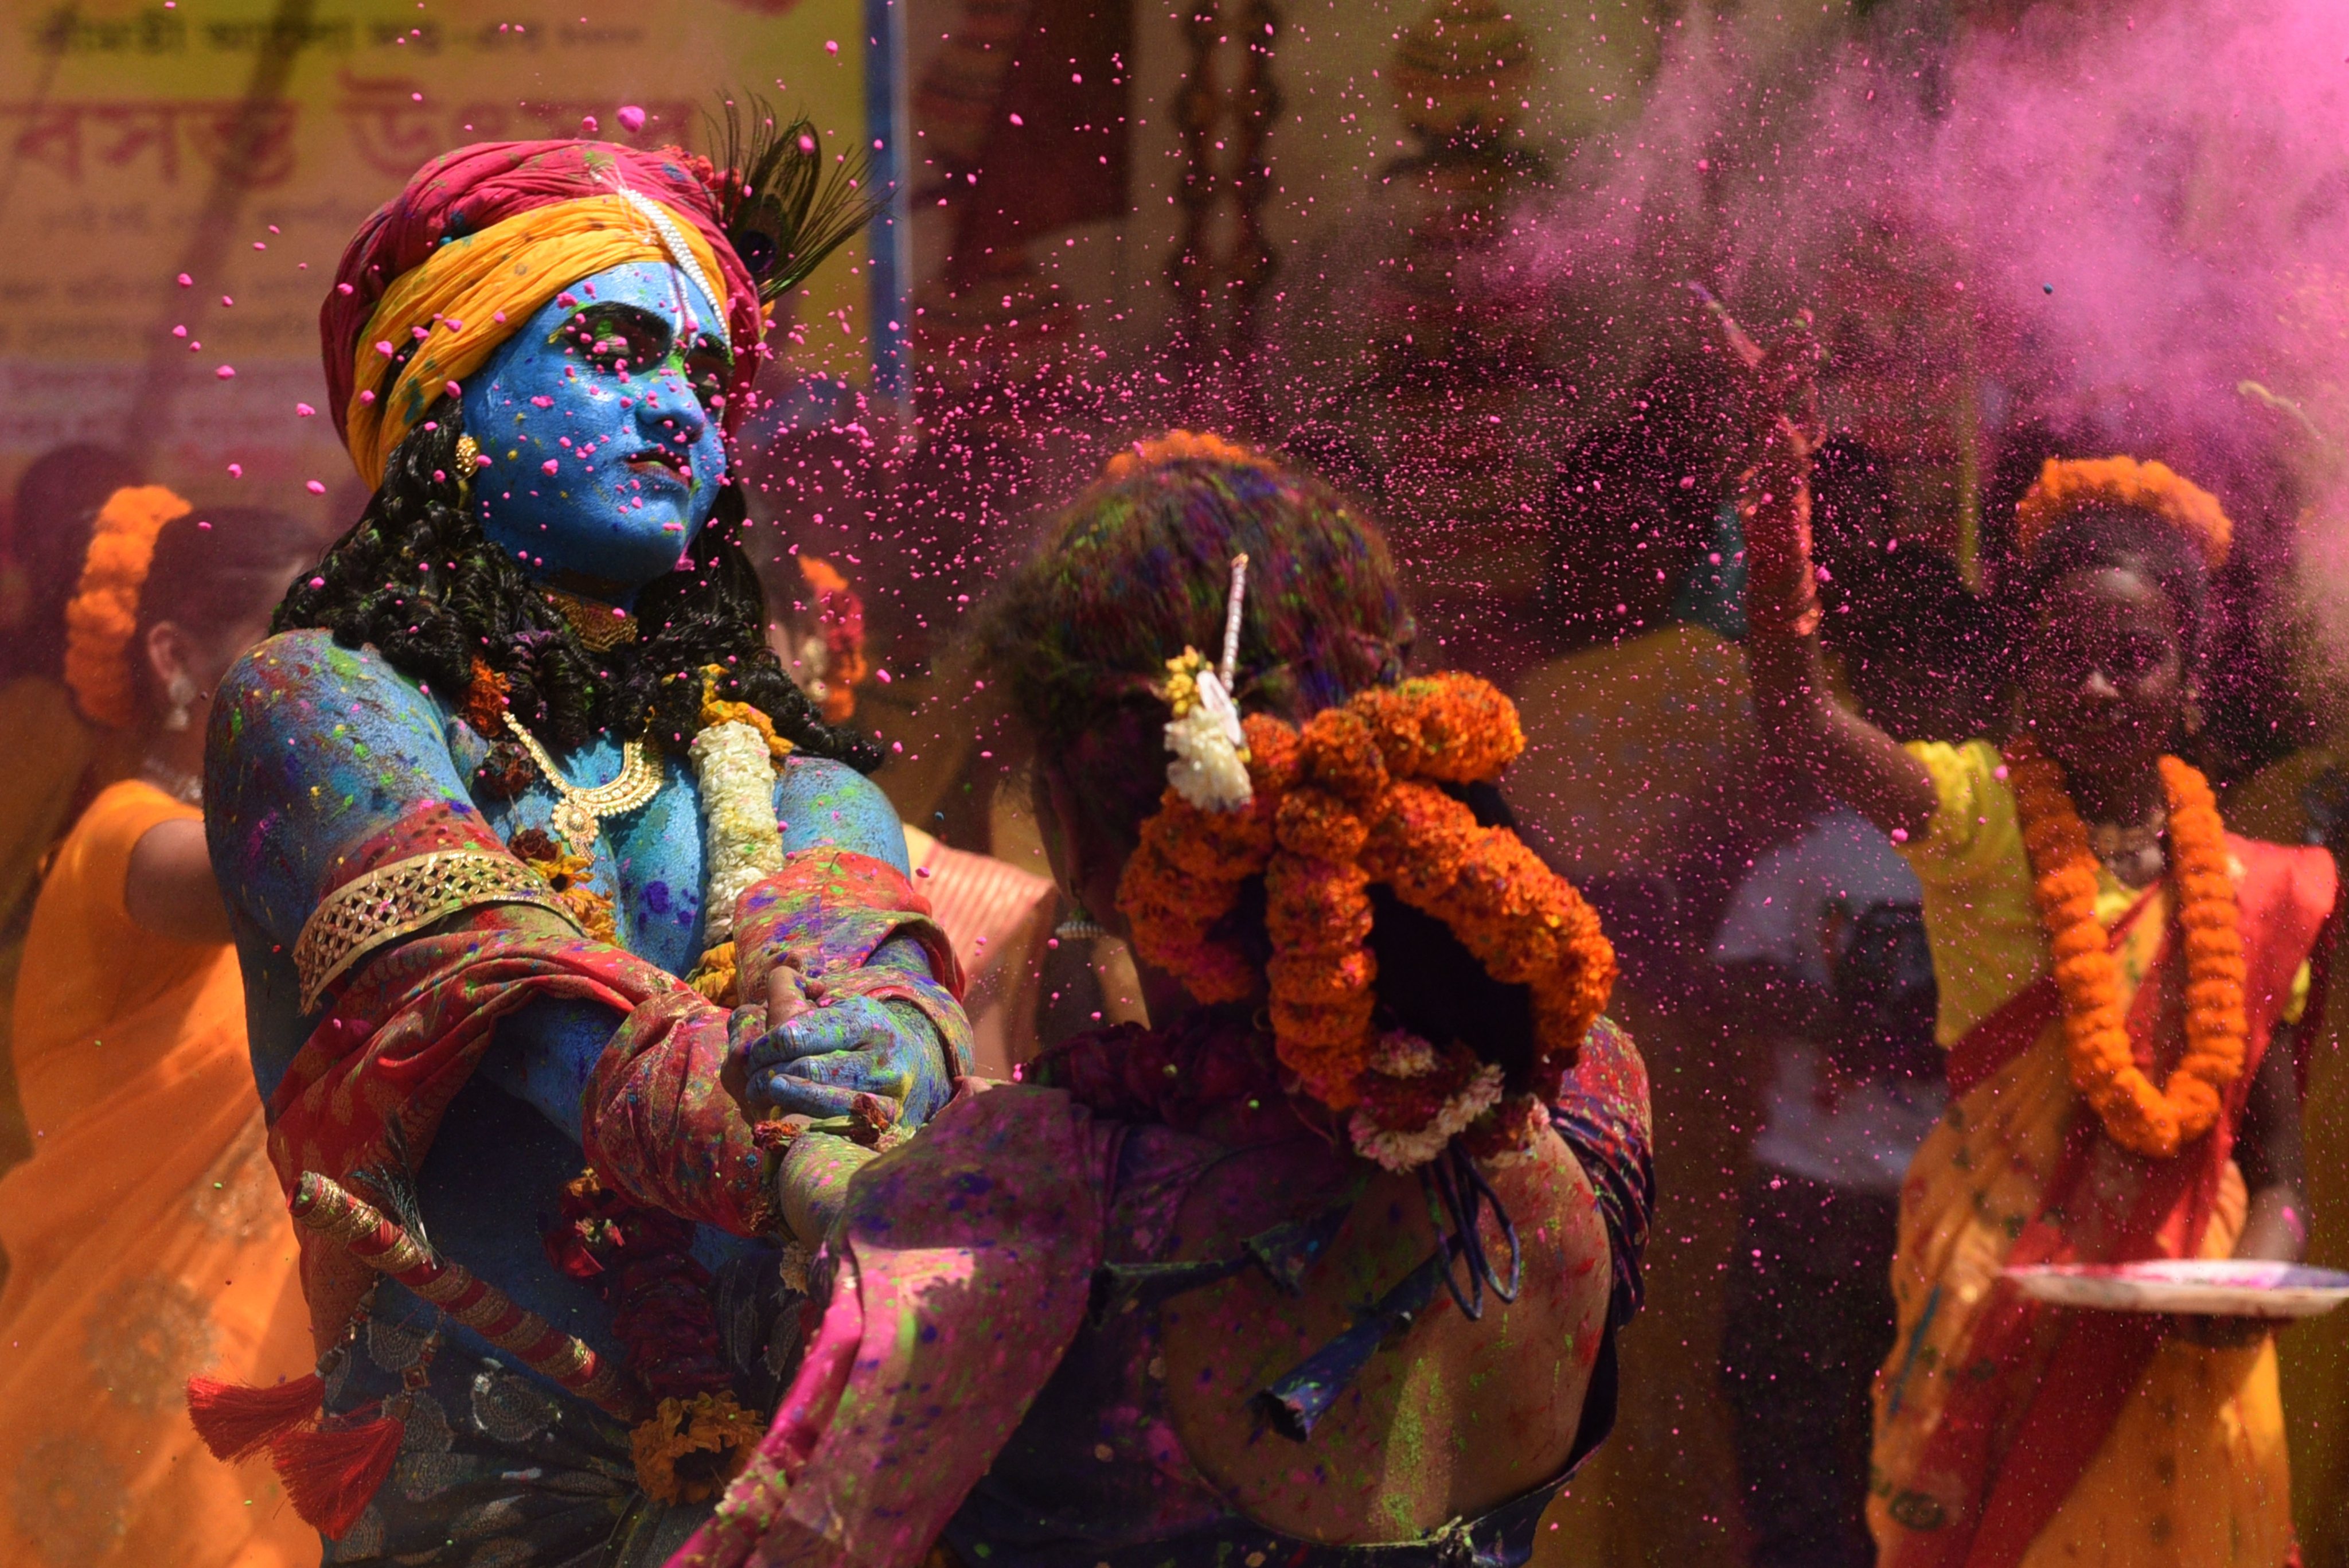 O festival Holi na Índia, que marca o início da primavera